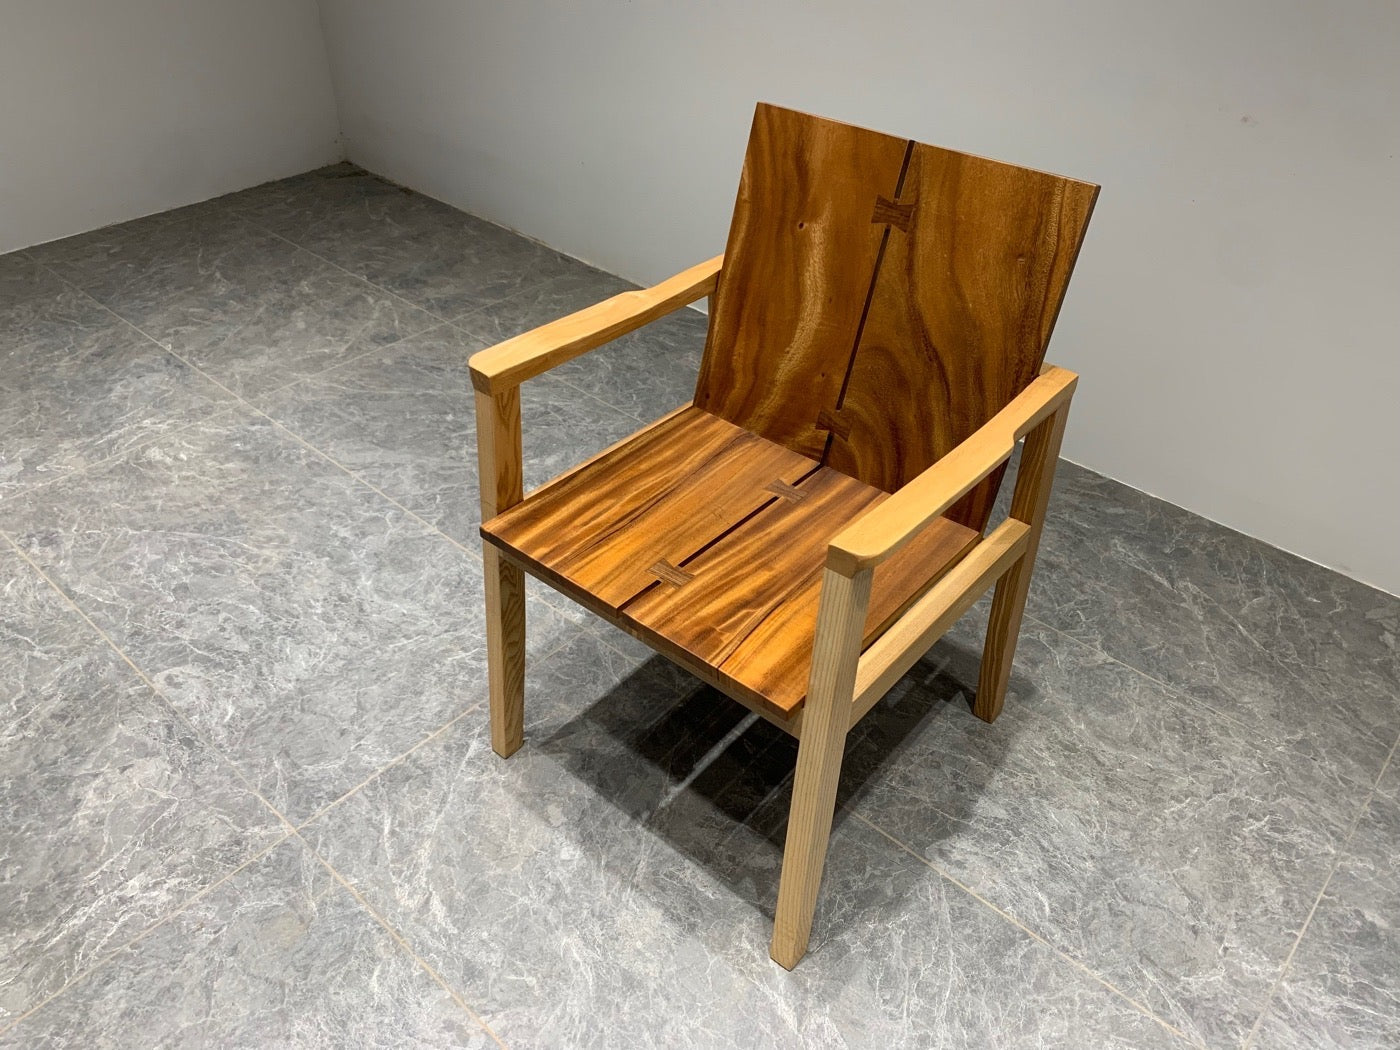 Silla Michigan Adirondack, silla de nogal con respaldo alto, silla trasera, silla de madera